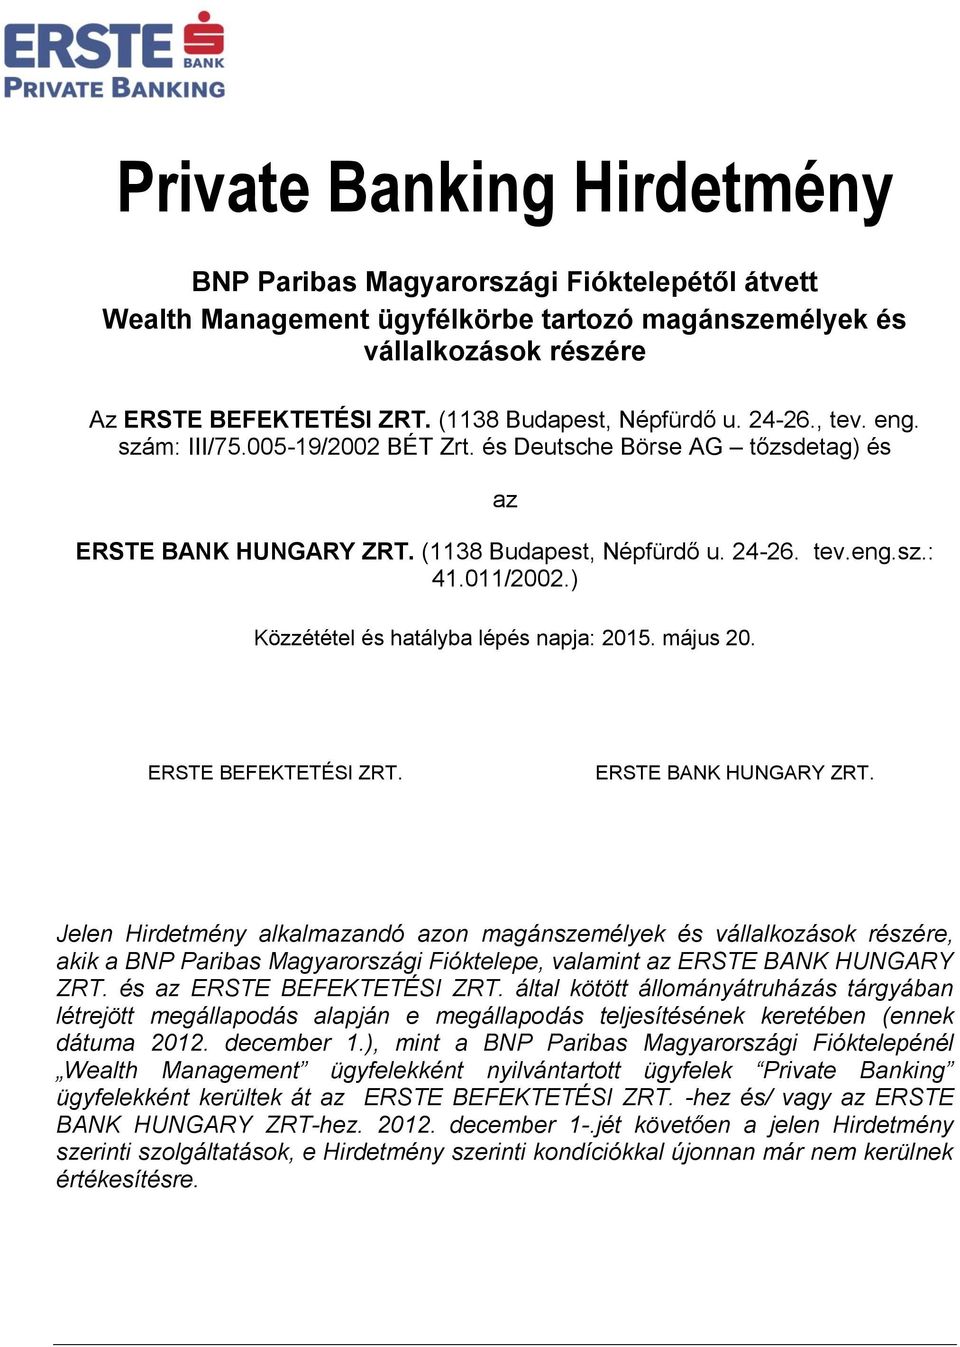 011/2002.) Közzététel és hatályba lépés napja: 2015. május 20. ERSTE BEFEKTETÉSI ZRT. ERSTE BANK HUNGARY ZRT.